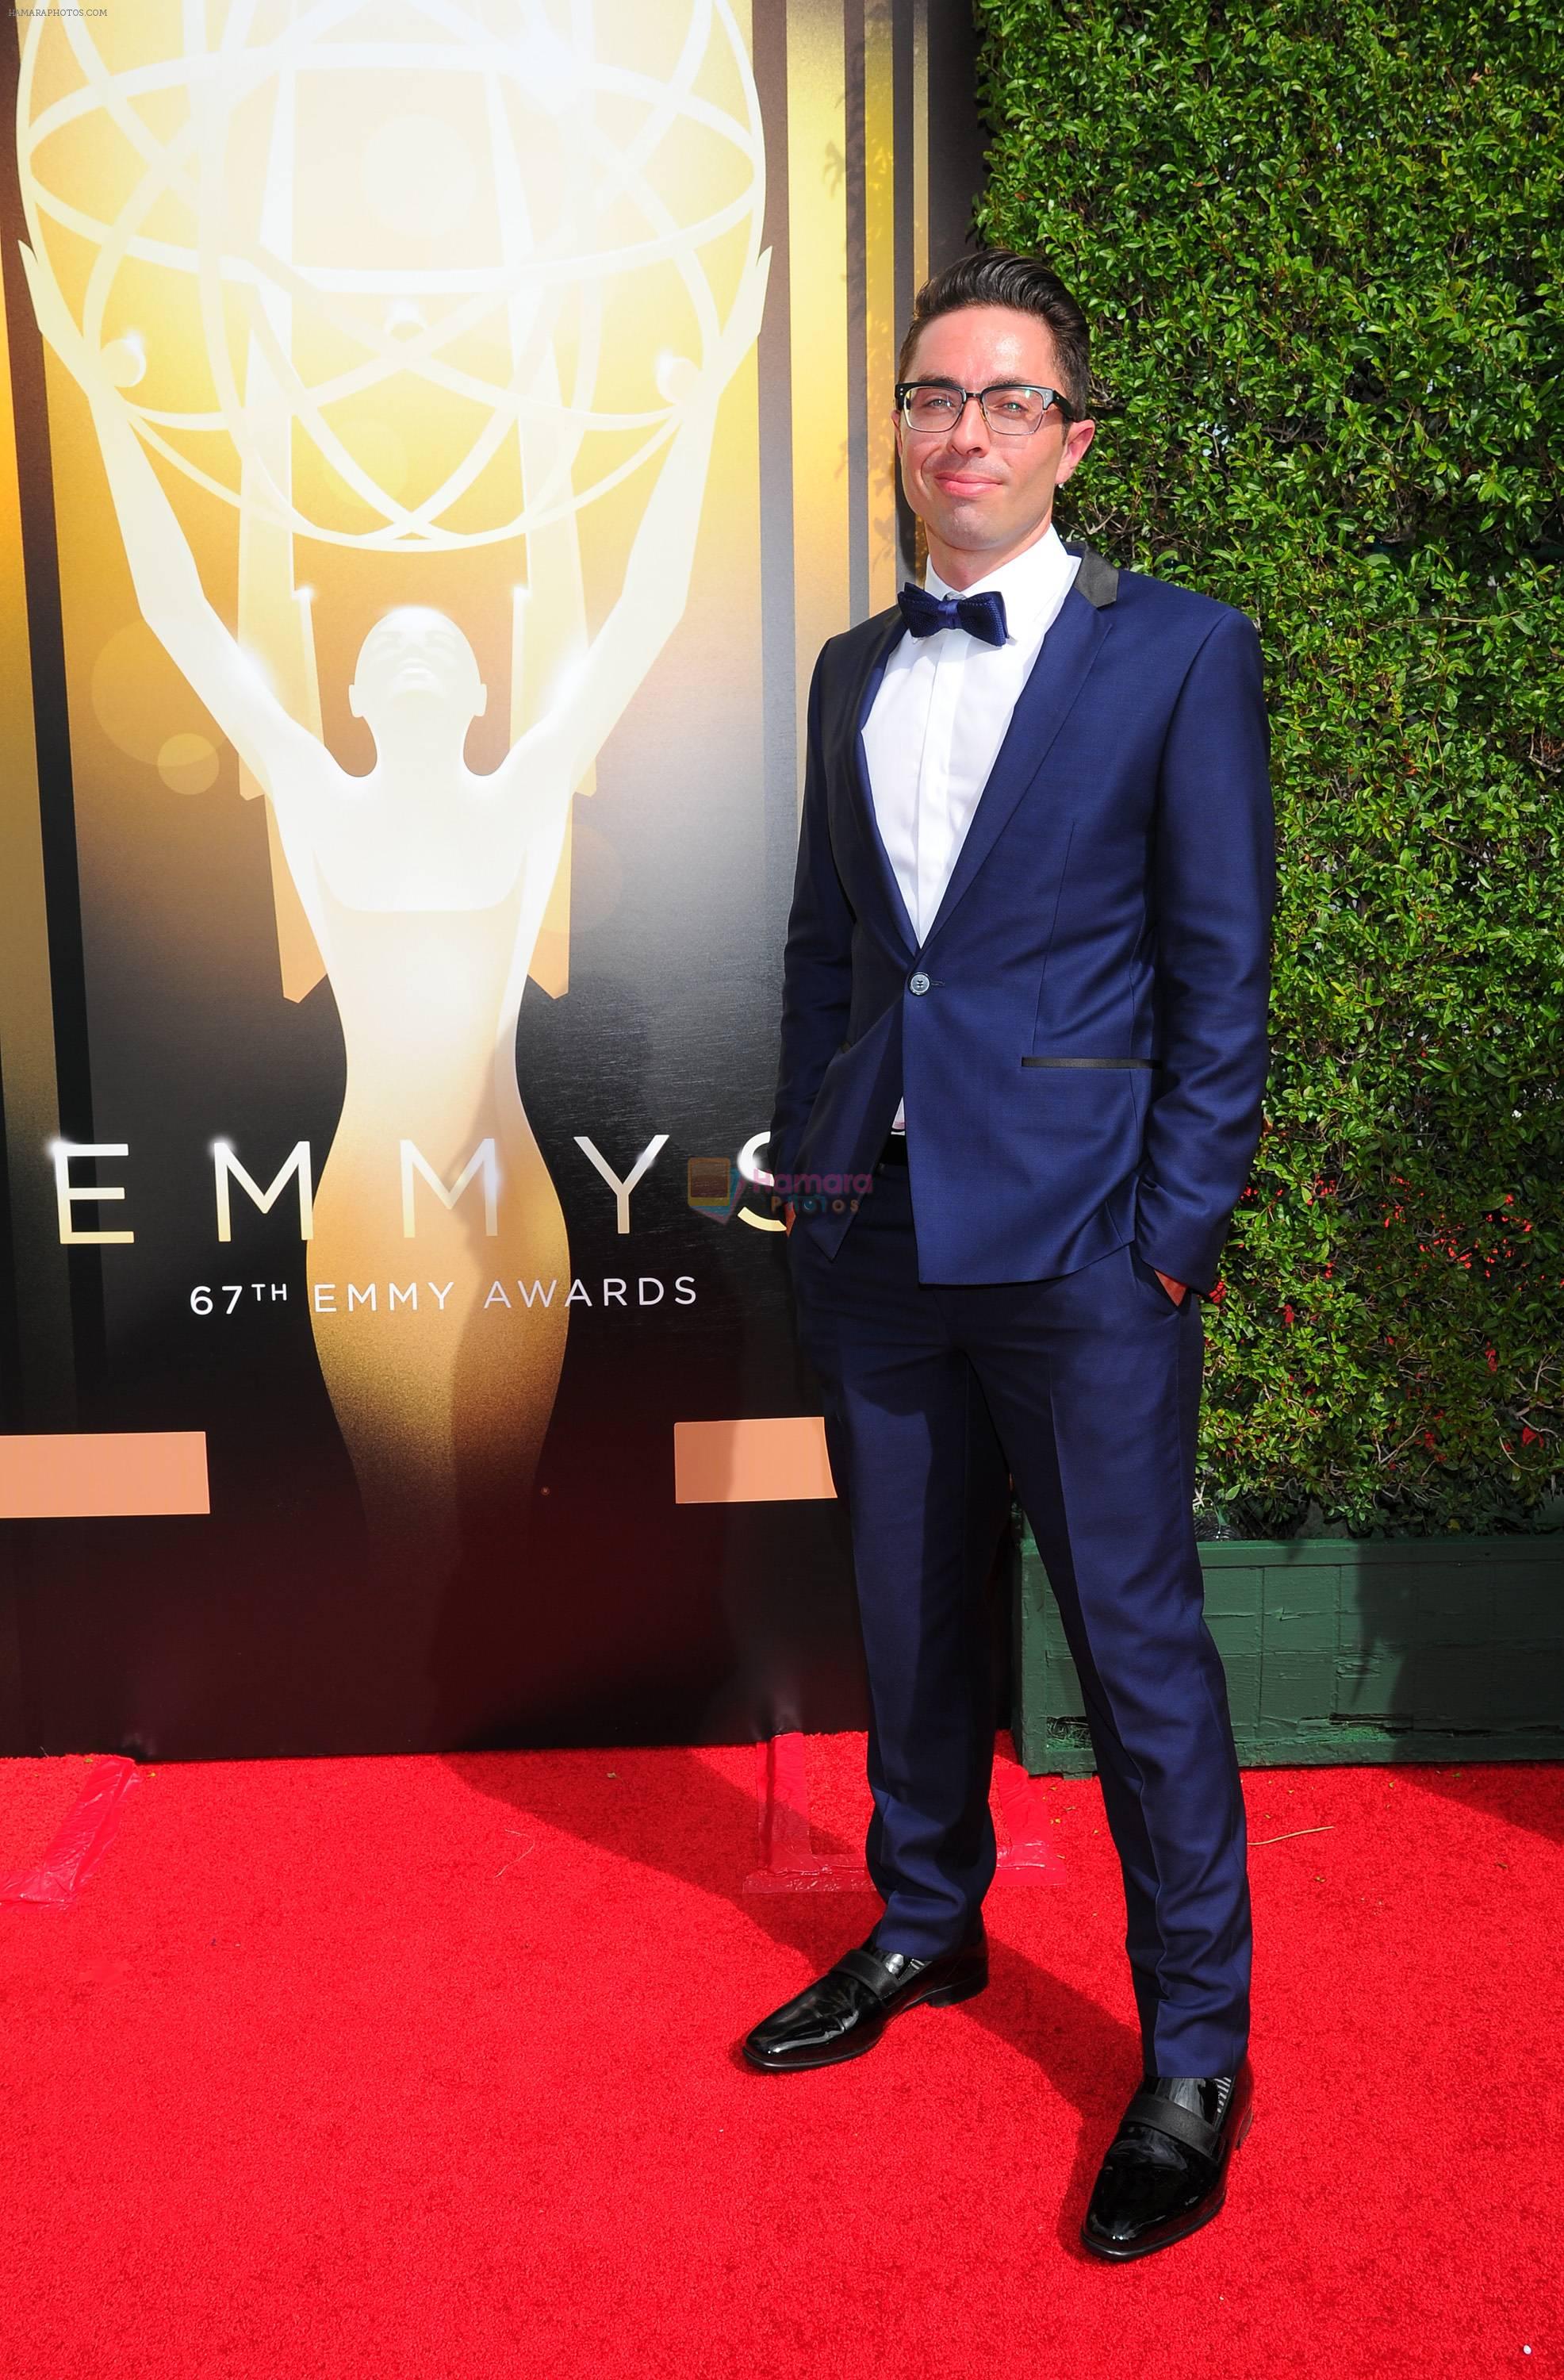 Emmy Awards 2015 red carpet